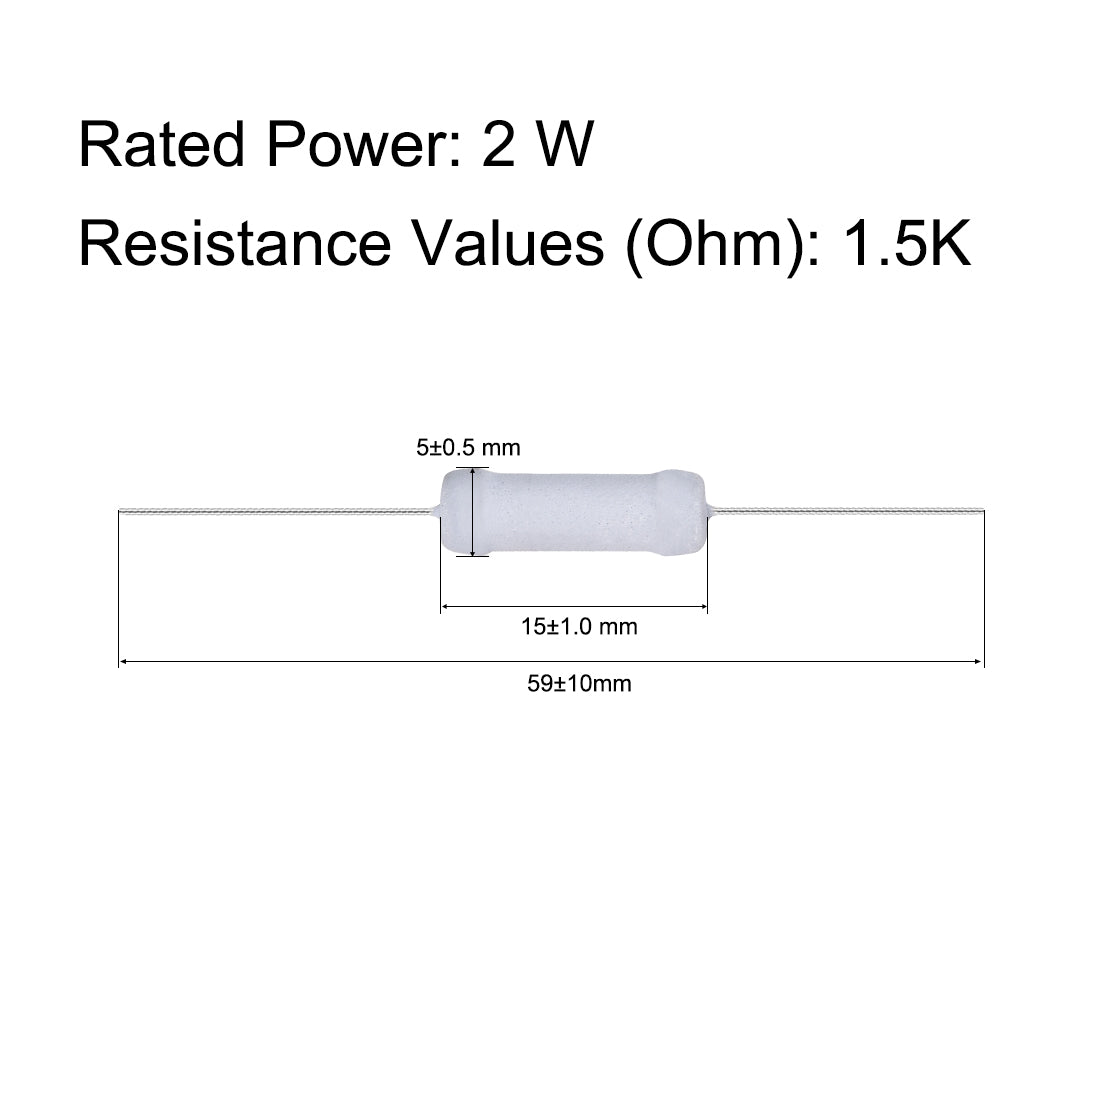 uxcell Uxcell 60pcs 2W 2 Watt Metal Oxide Film Resistor Axile Lead 1.5K Ohm ±5% Tolerance